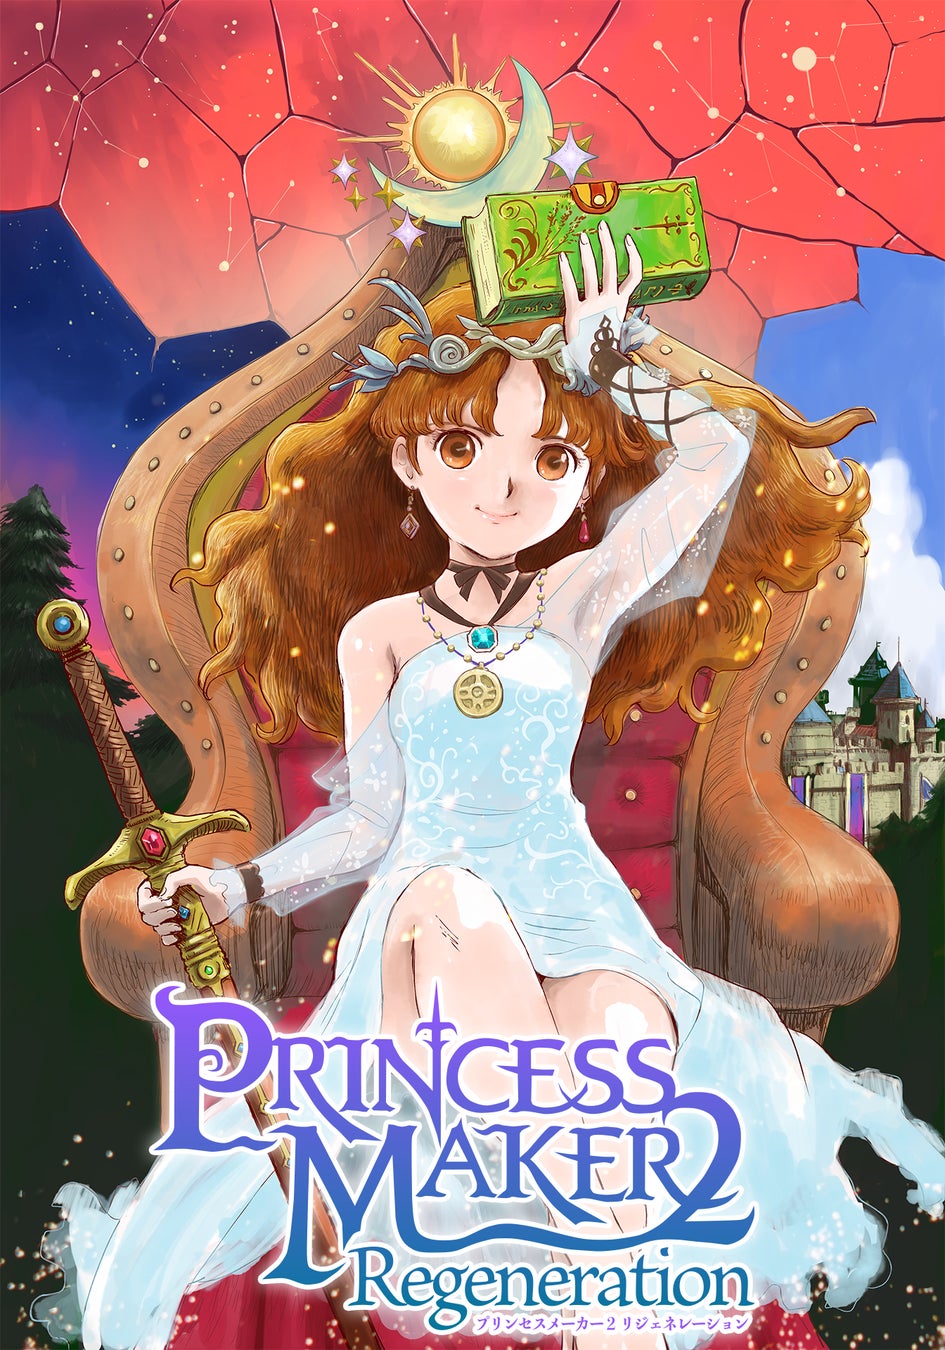 「プリンセスメーカー２ リジェネレーション」のアニメーショントレーラー公開と発売延期の発表